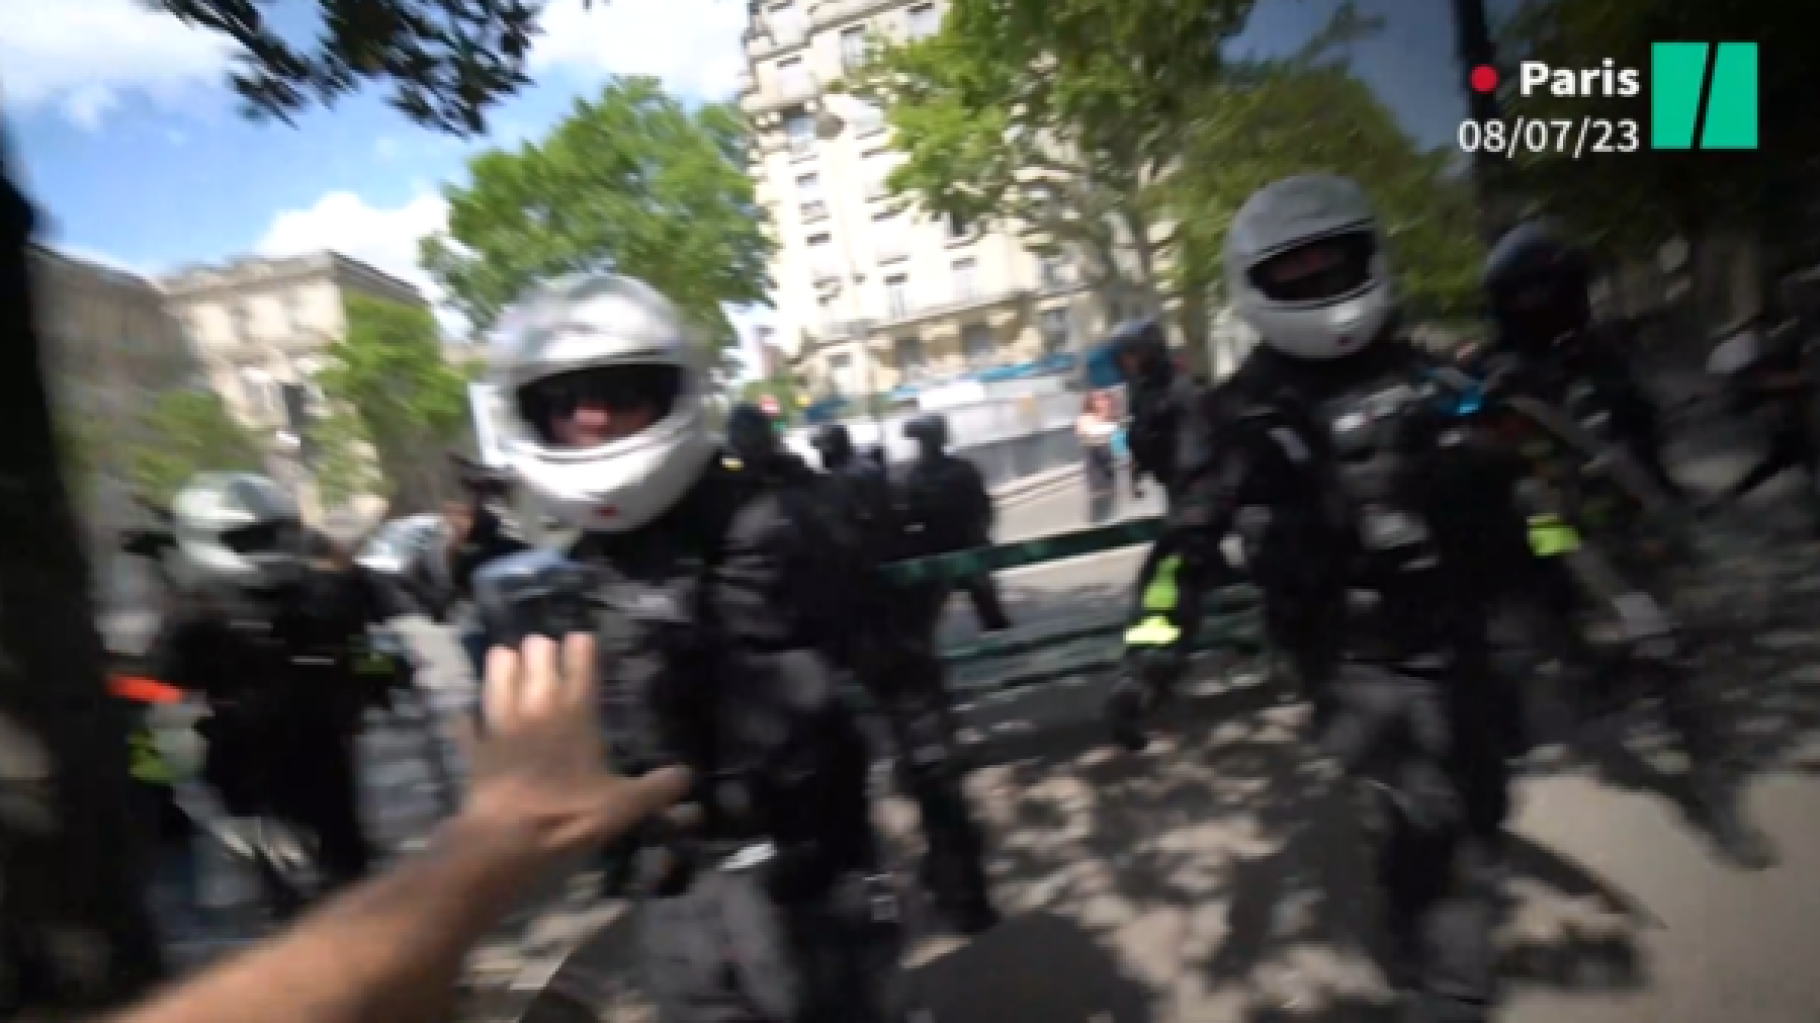 « Le HuffPost » condamne les violences subies par les journalistes en marge de la marche à Paris